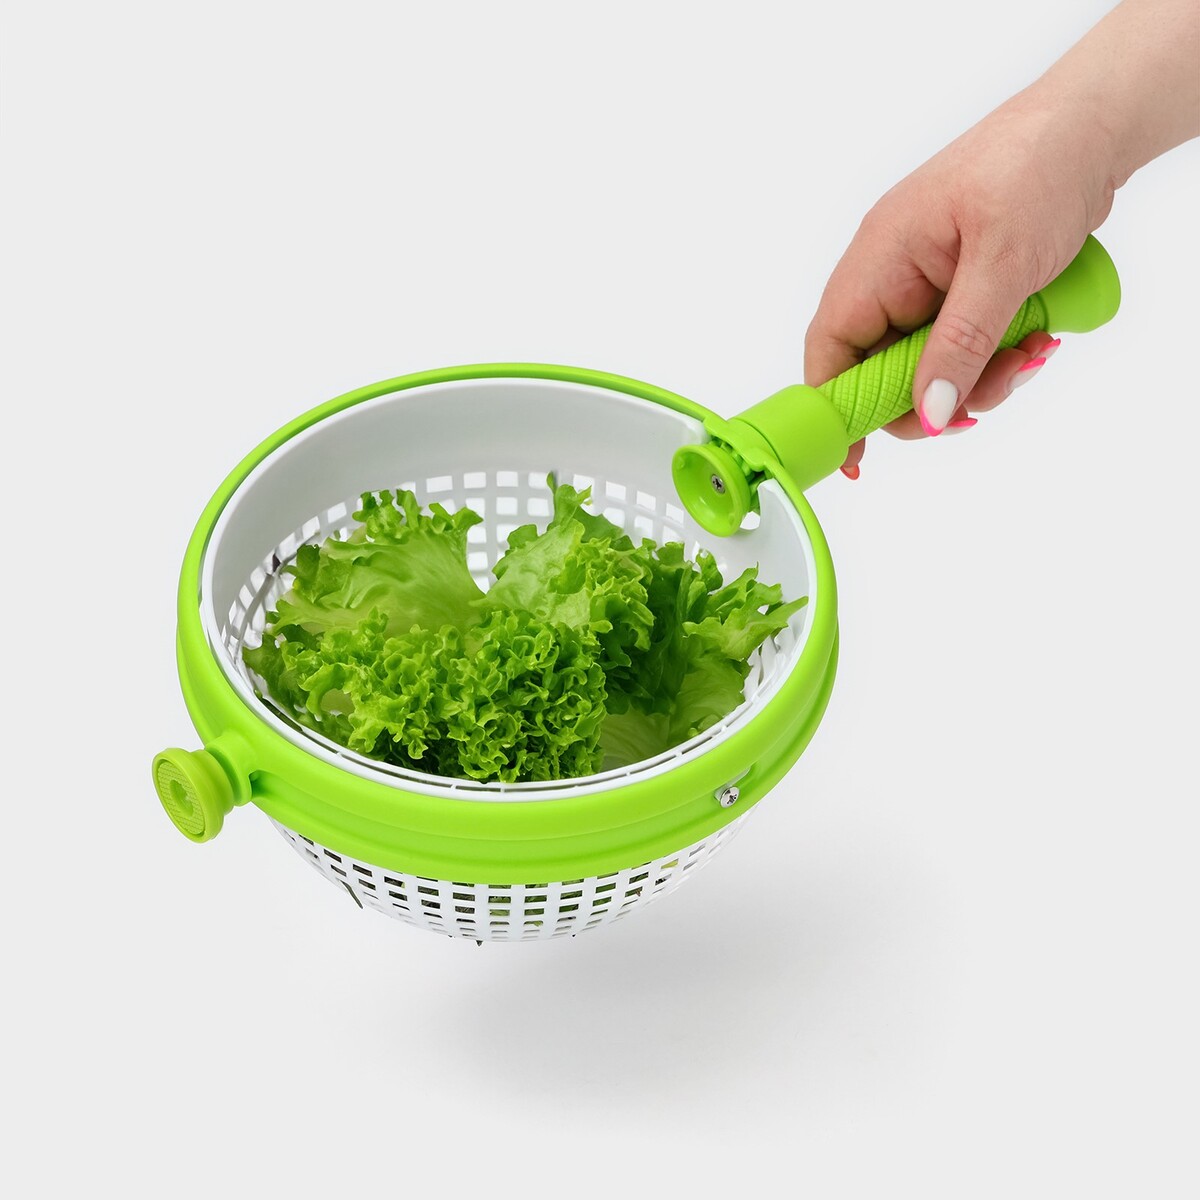 Центрифуга для сушки зелени, цвет зеленый центрифуга для сушки зелени зеленый